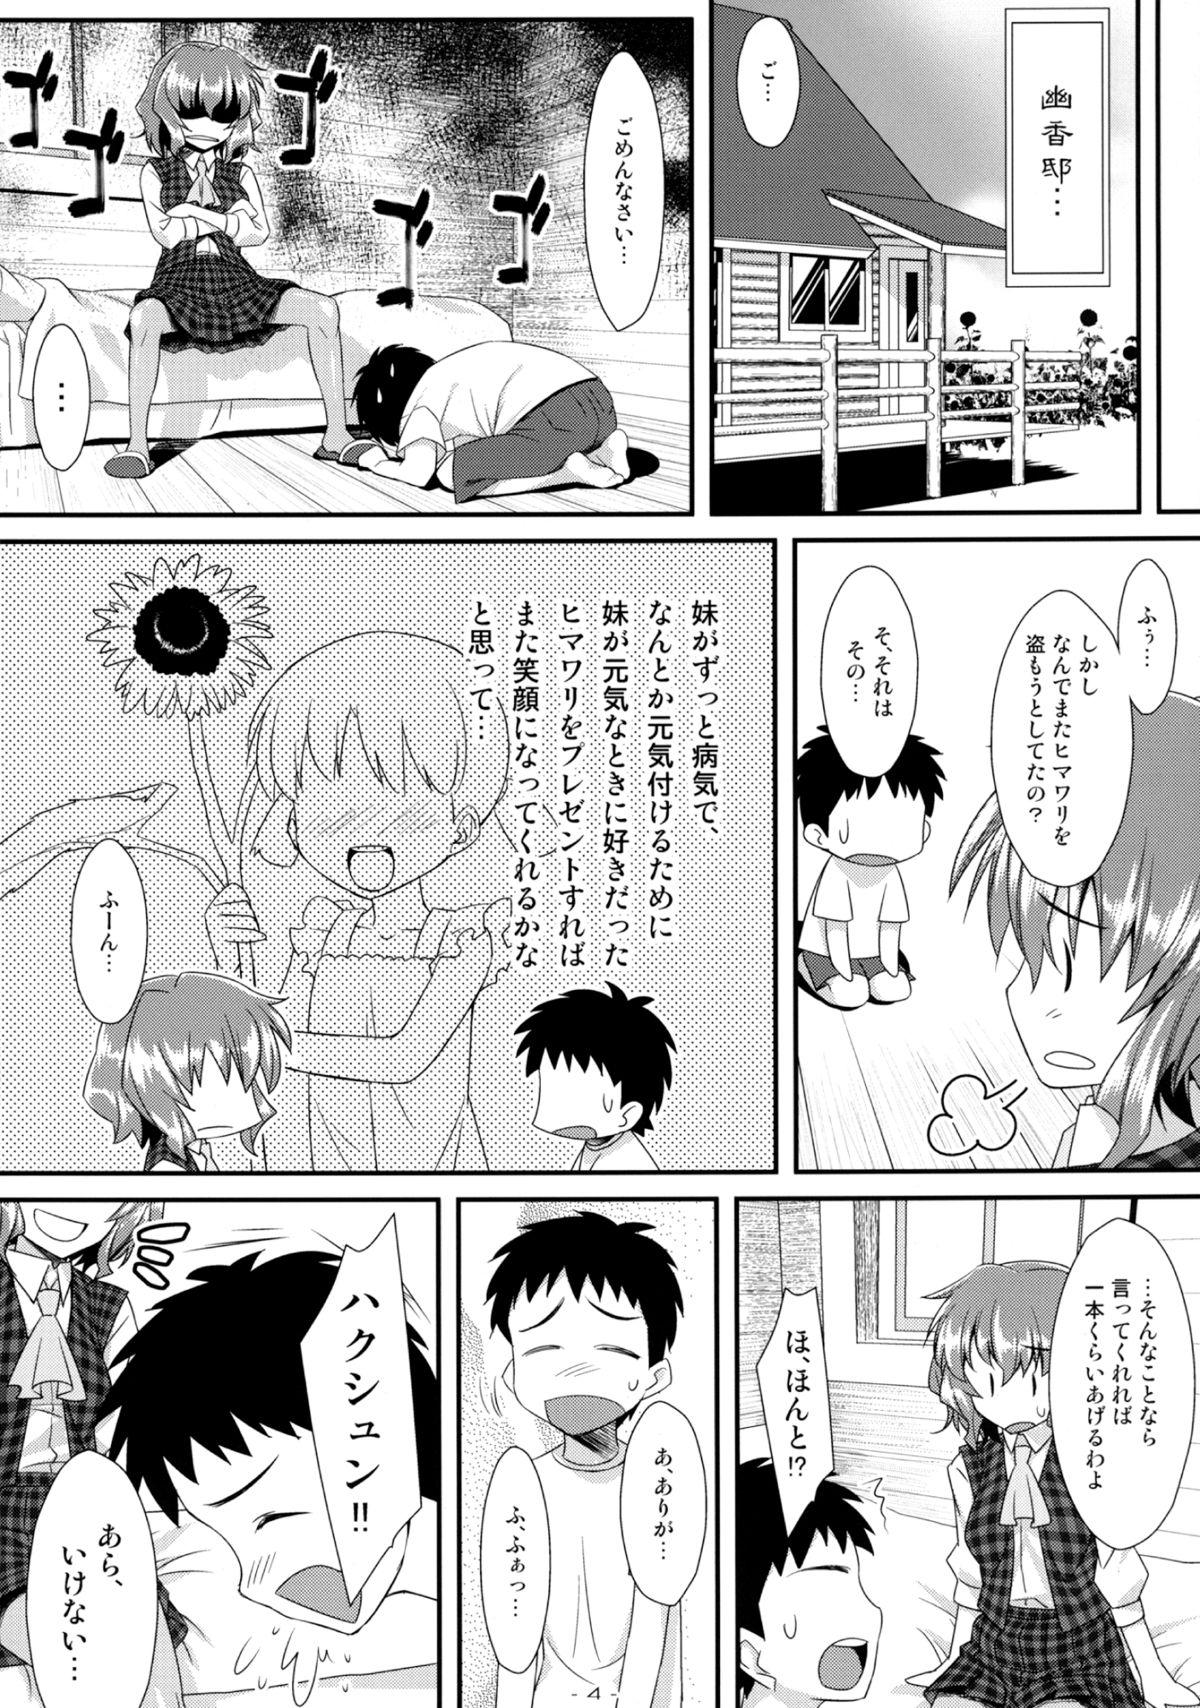 Toy Yasei no Chijo ga Arawareta! 5 - Touhou project Super - Page 4